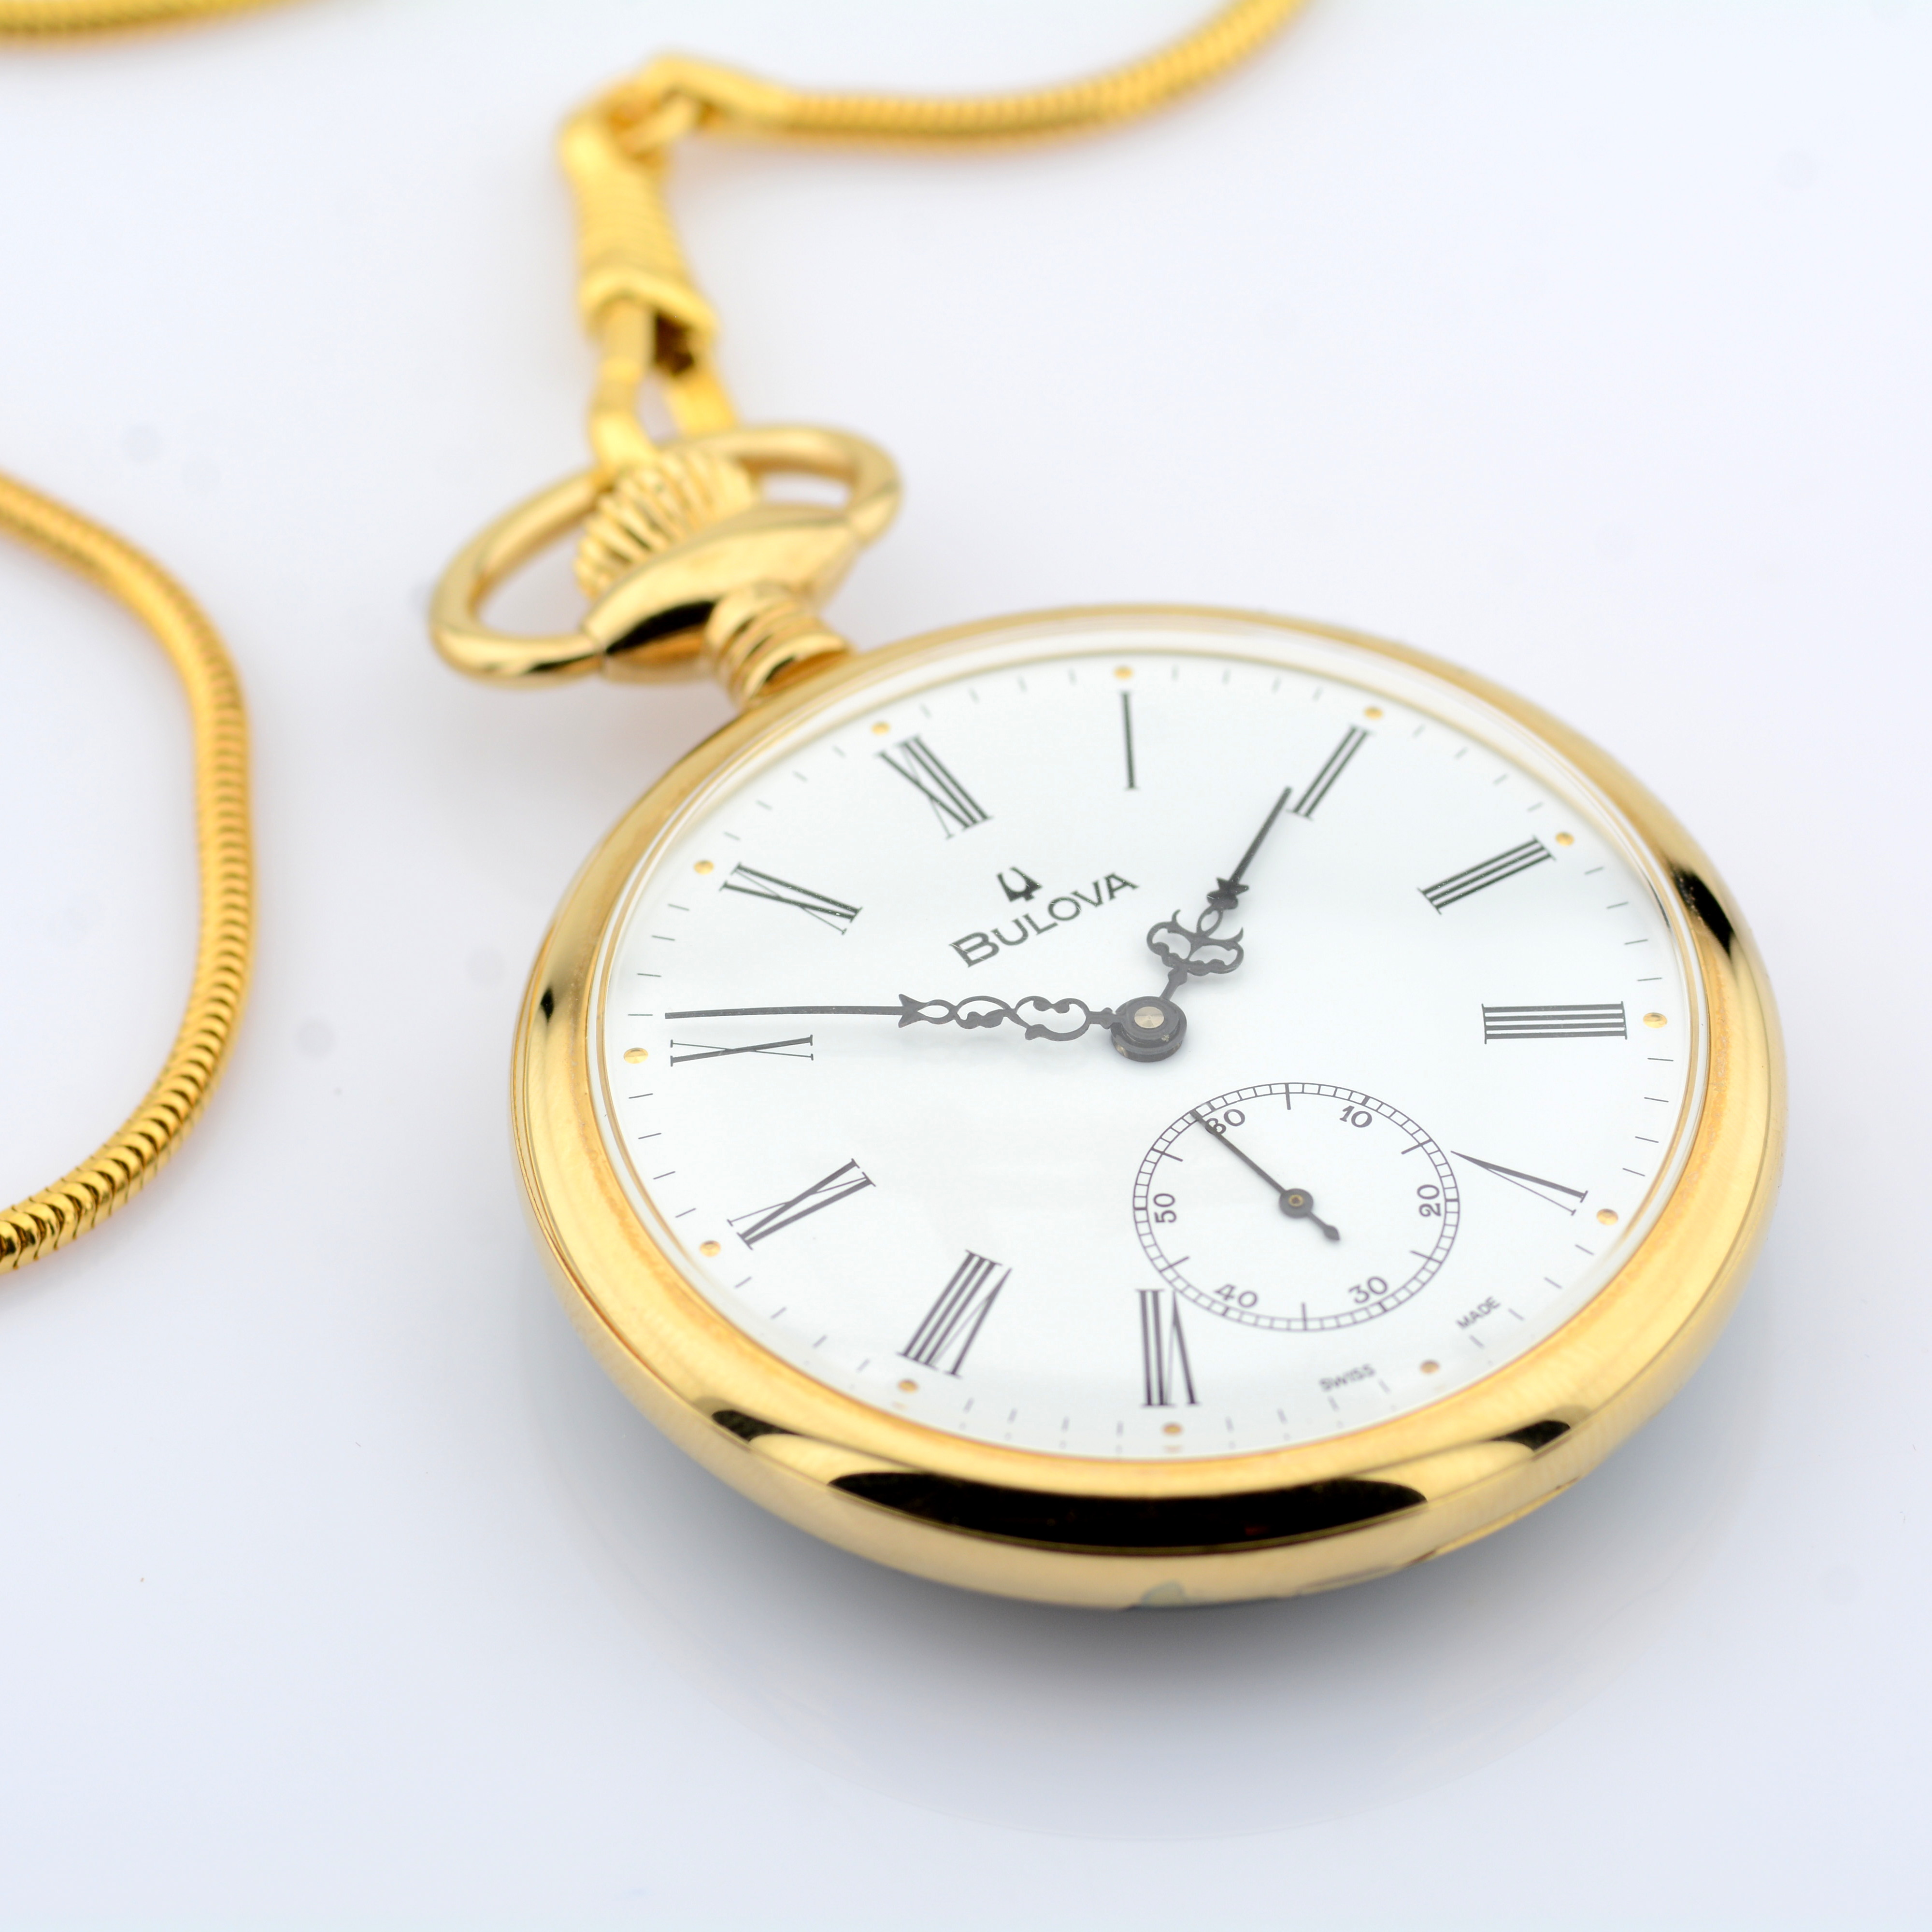 Bulova / Pocket Watch - Gentlmen's Gold/Steel Wrist Watch - Image 3 of 9